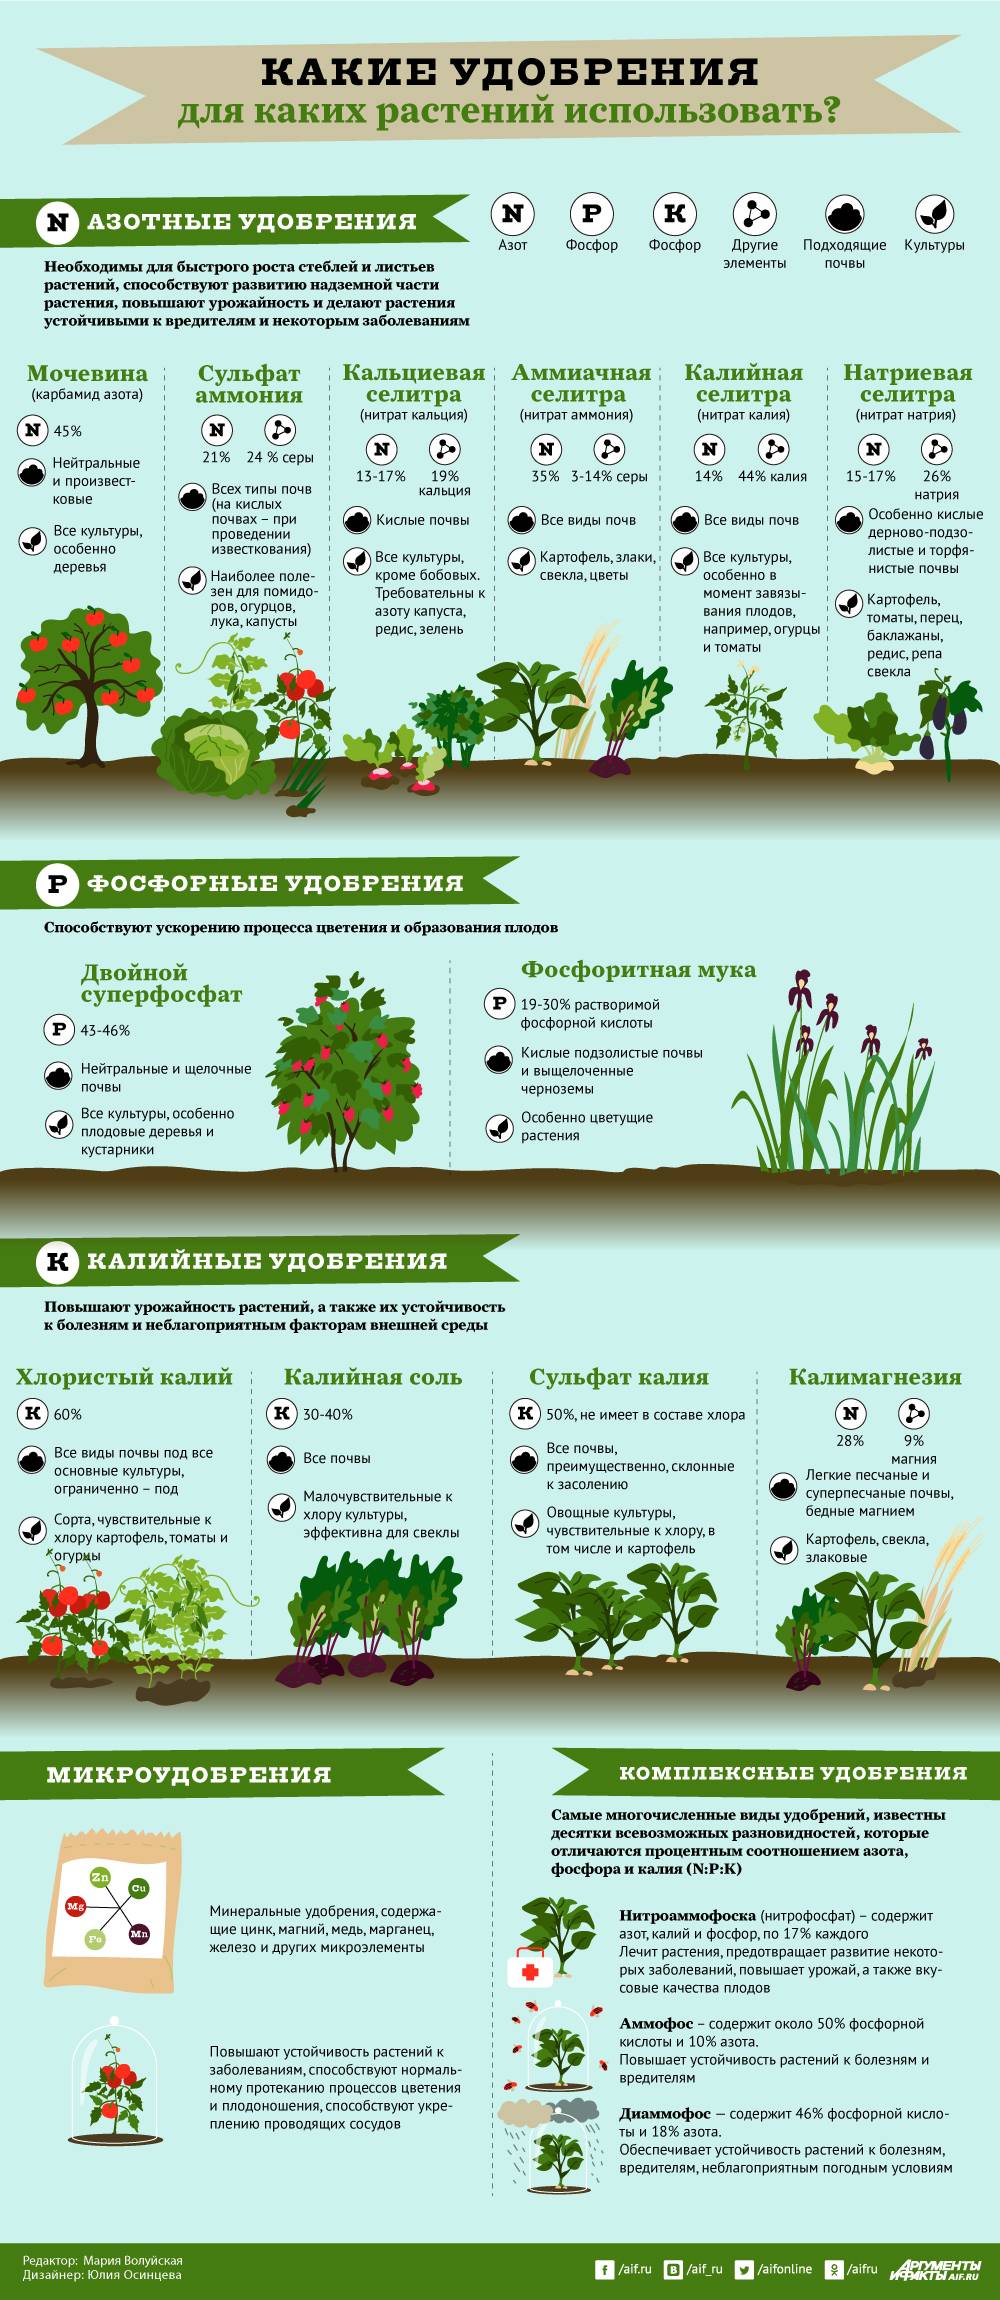 Древесная зола как удобрение: применение для огорода